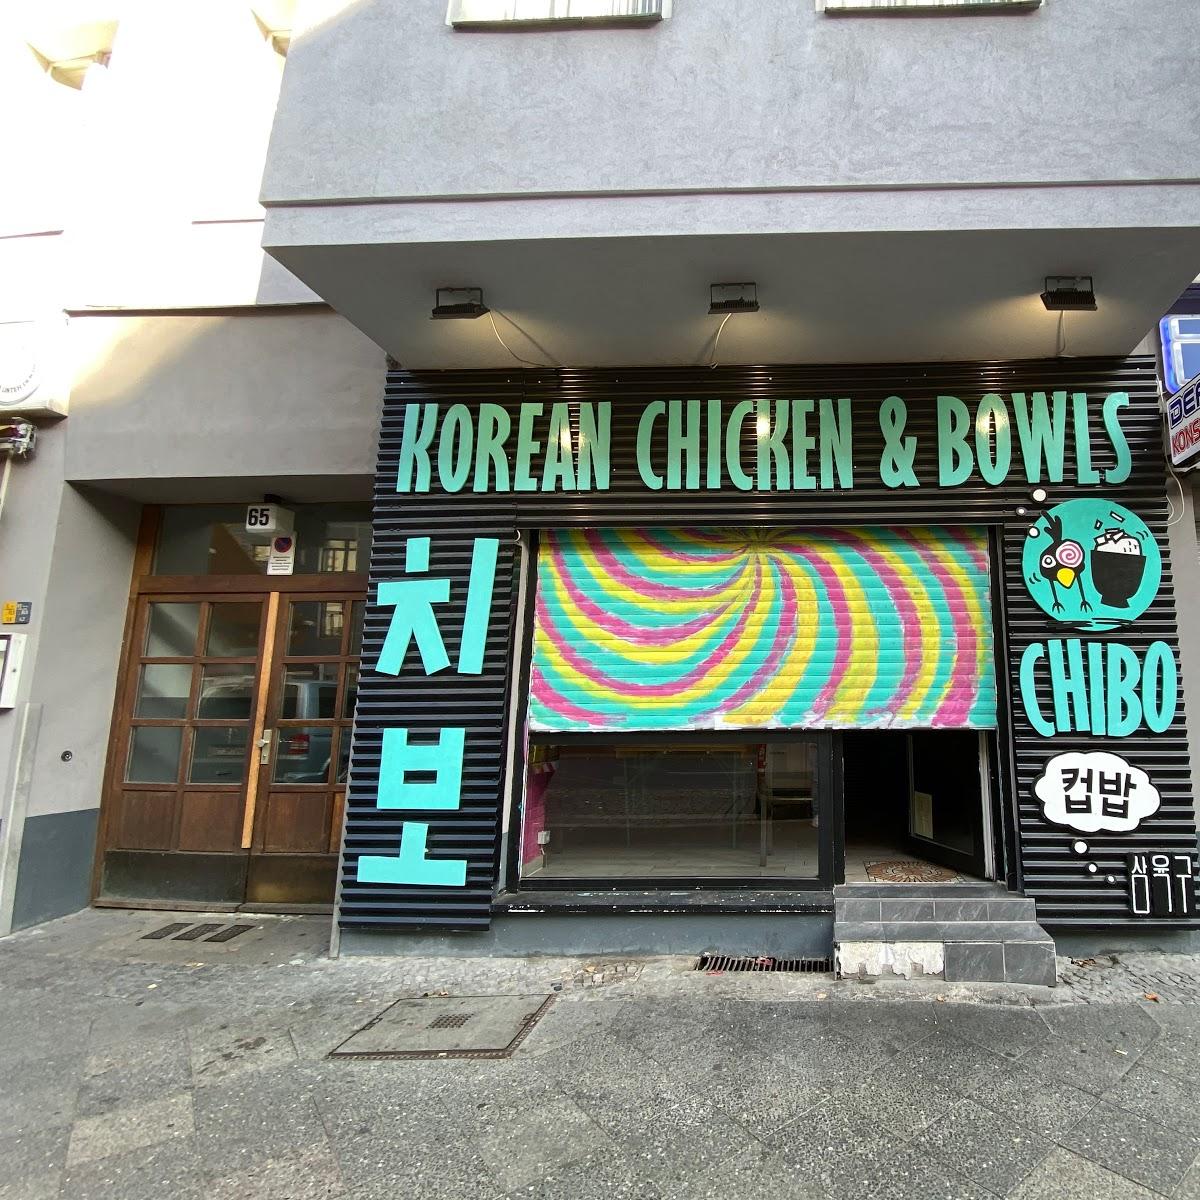 Chibo - Korean Chicken & Bowls